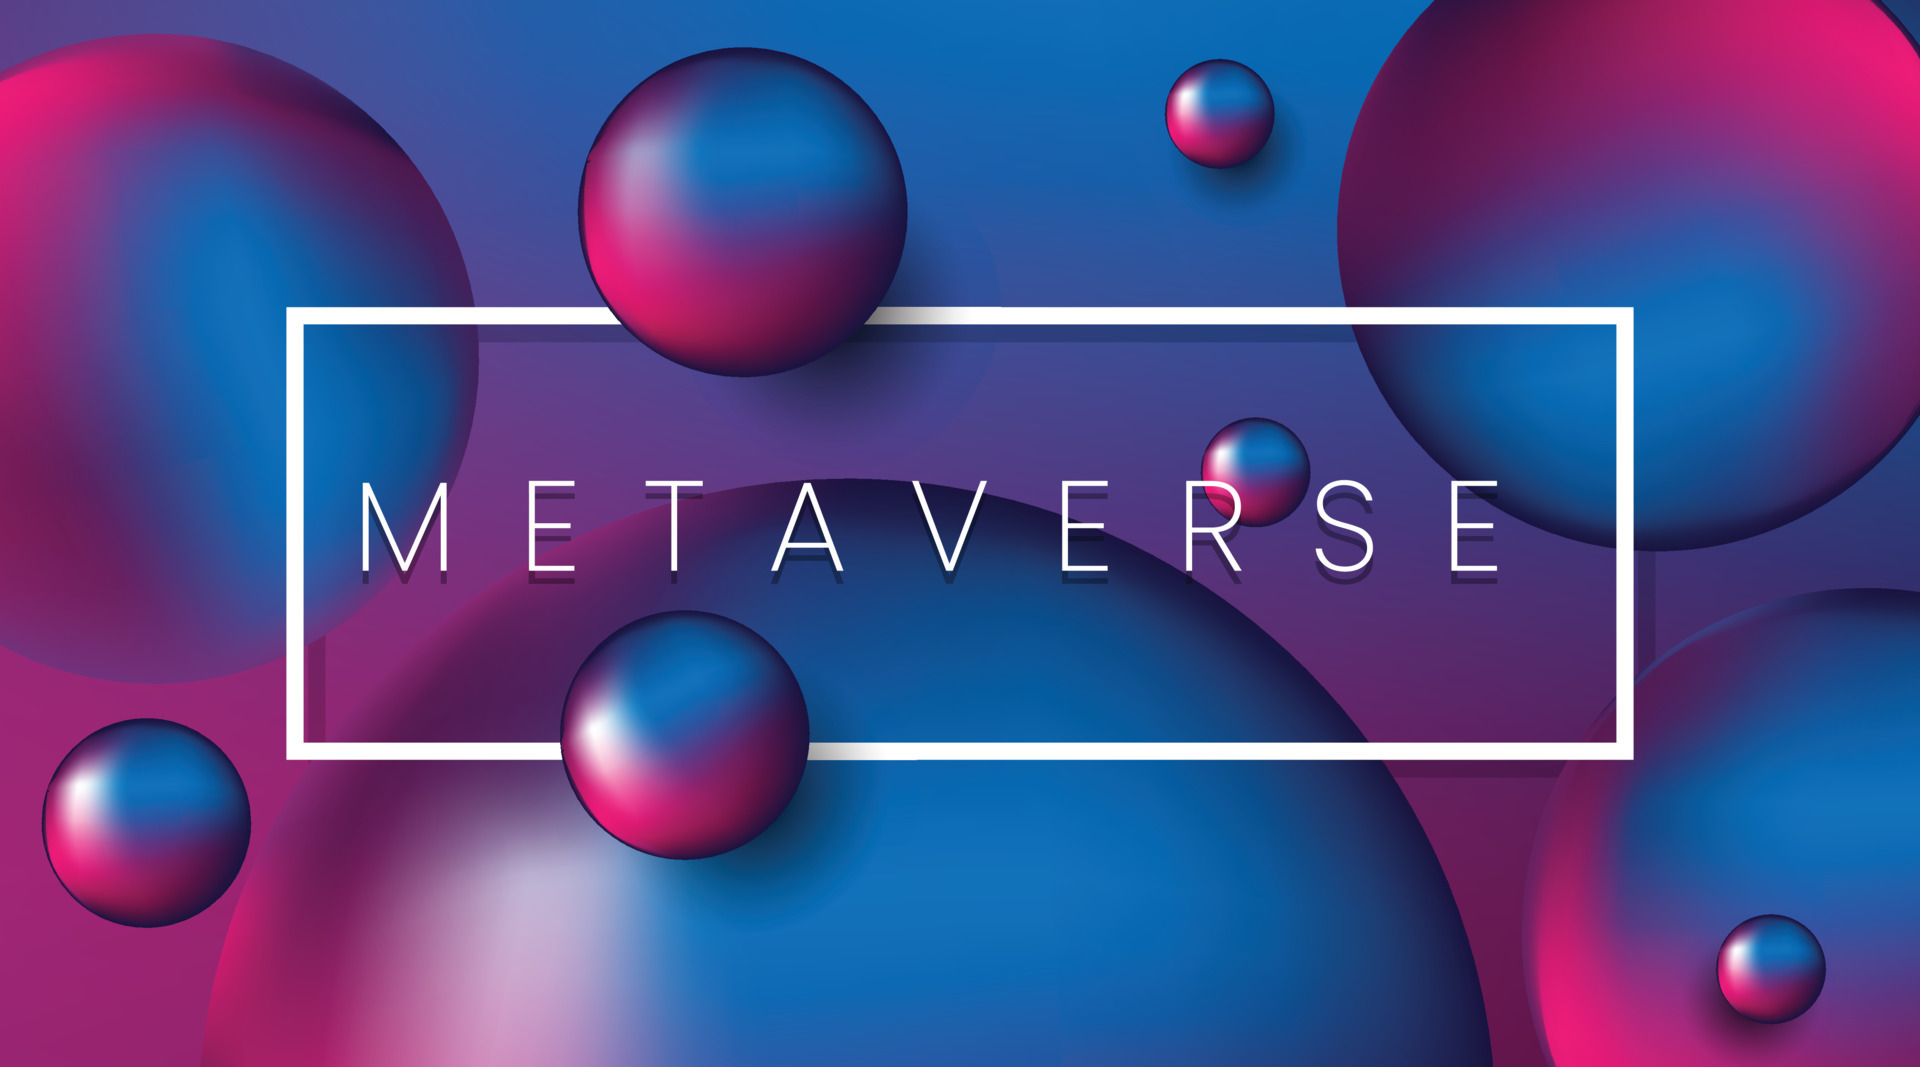 这是一张具有抽象风格的图片，展示了多个浮动的彩色球体，背景为蓝紫色渐变，中间有“METAVERSE”字样的白色矩形框。